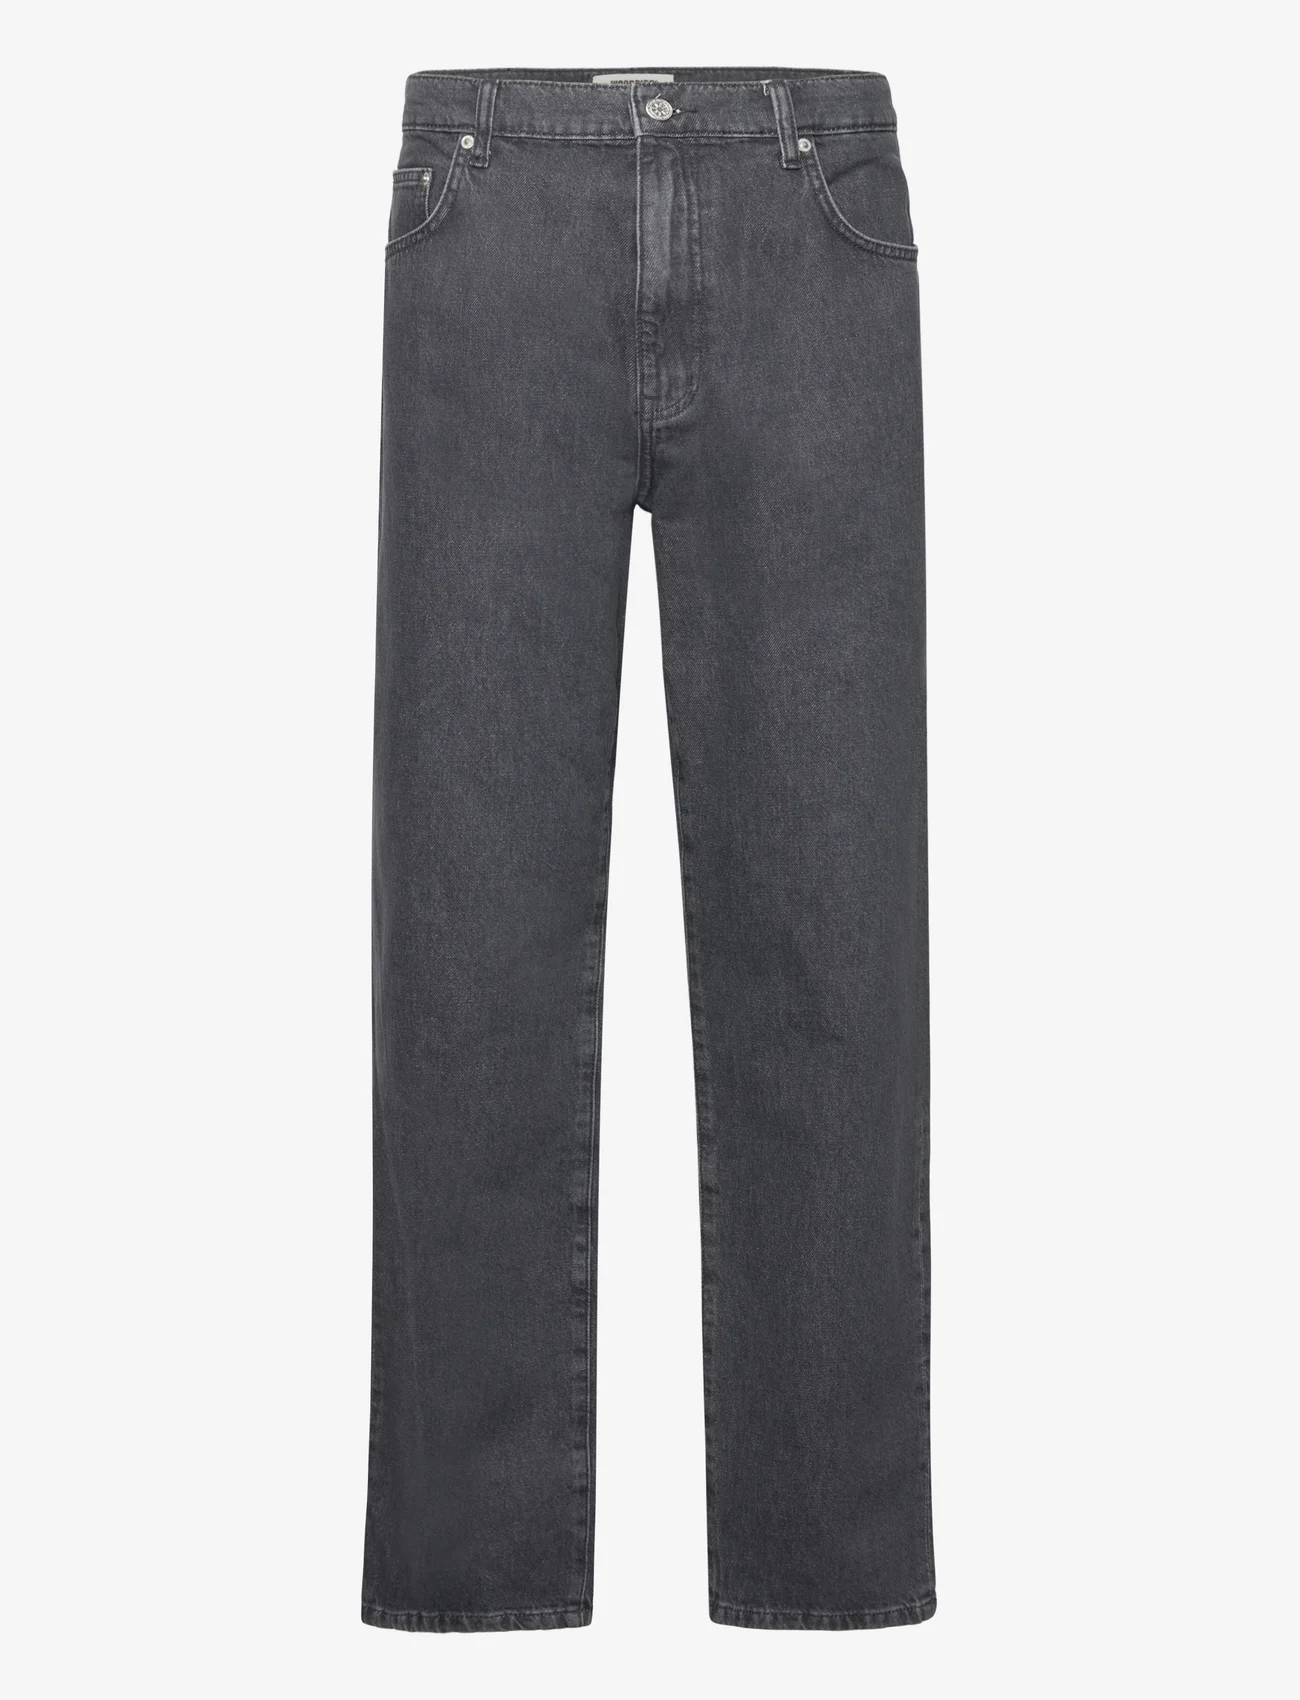 Woodbird - WBLeroy Coal Jeans - loose jeans - grey - 0